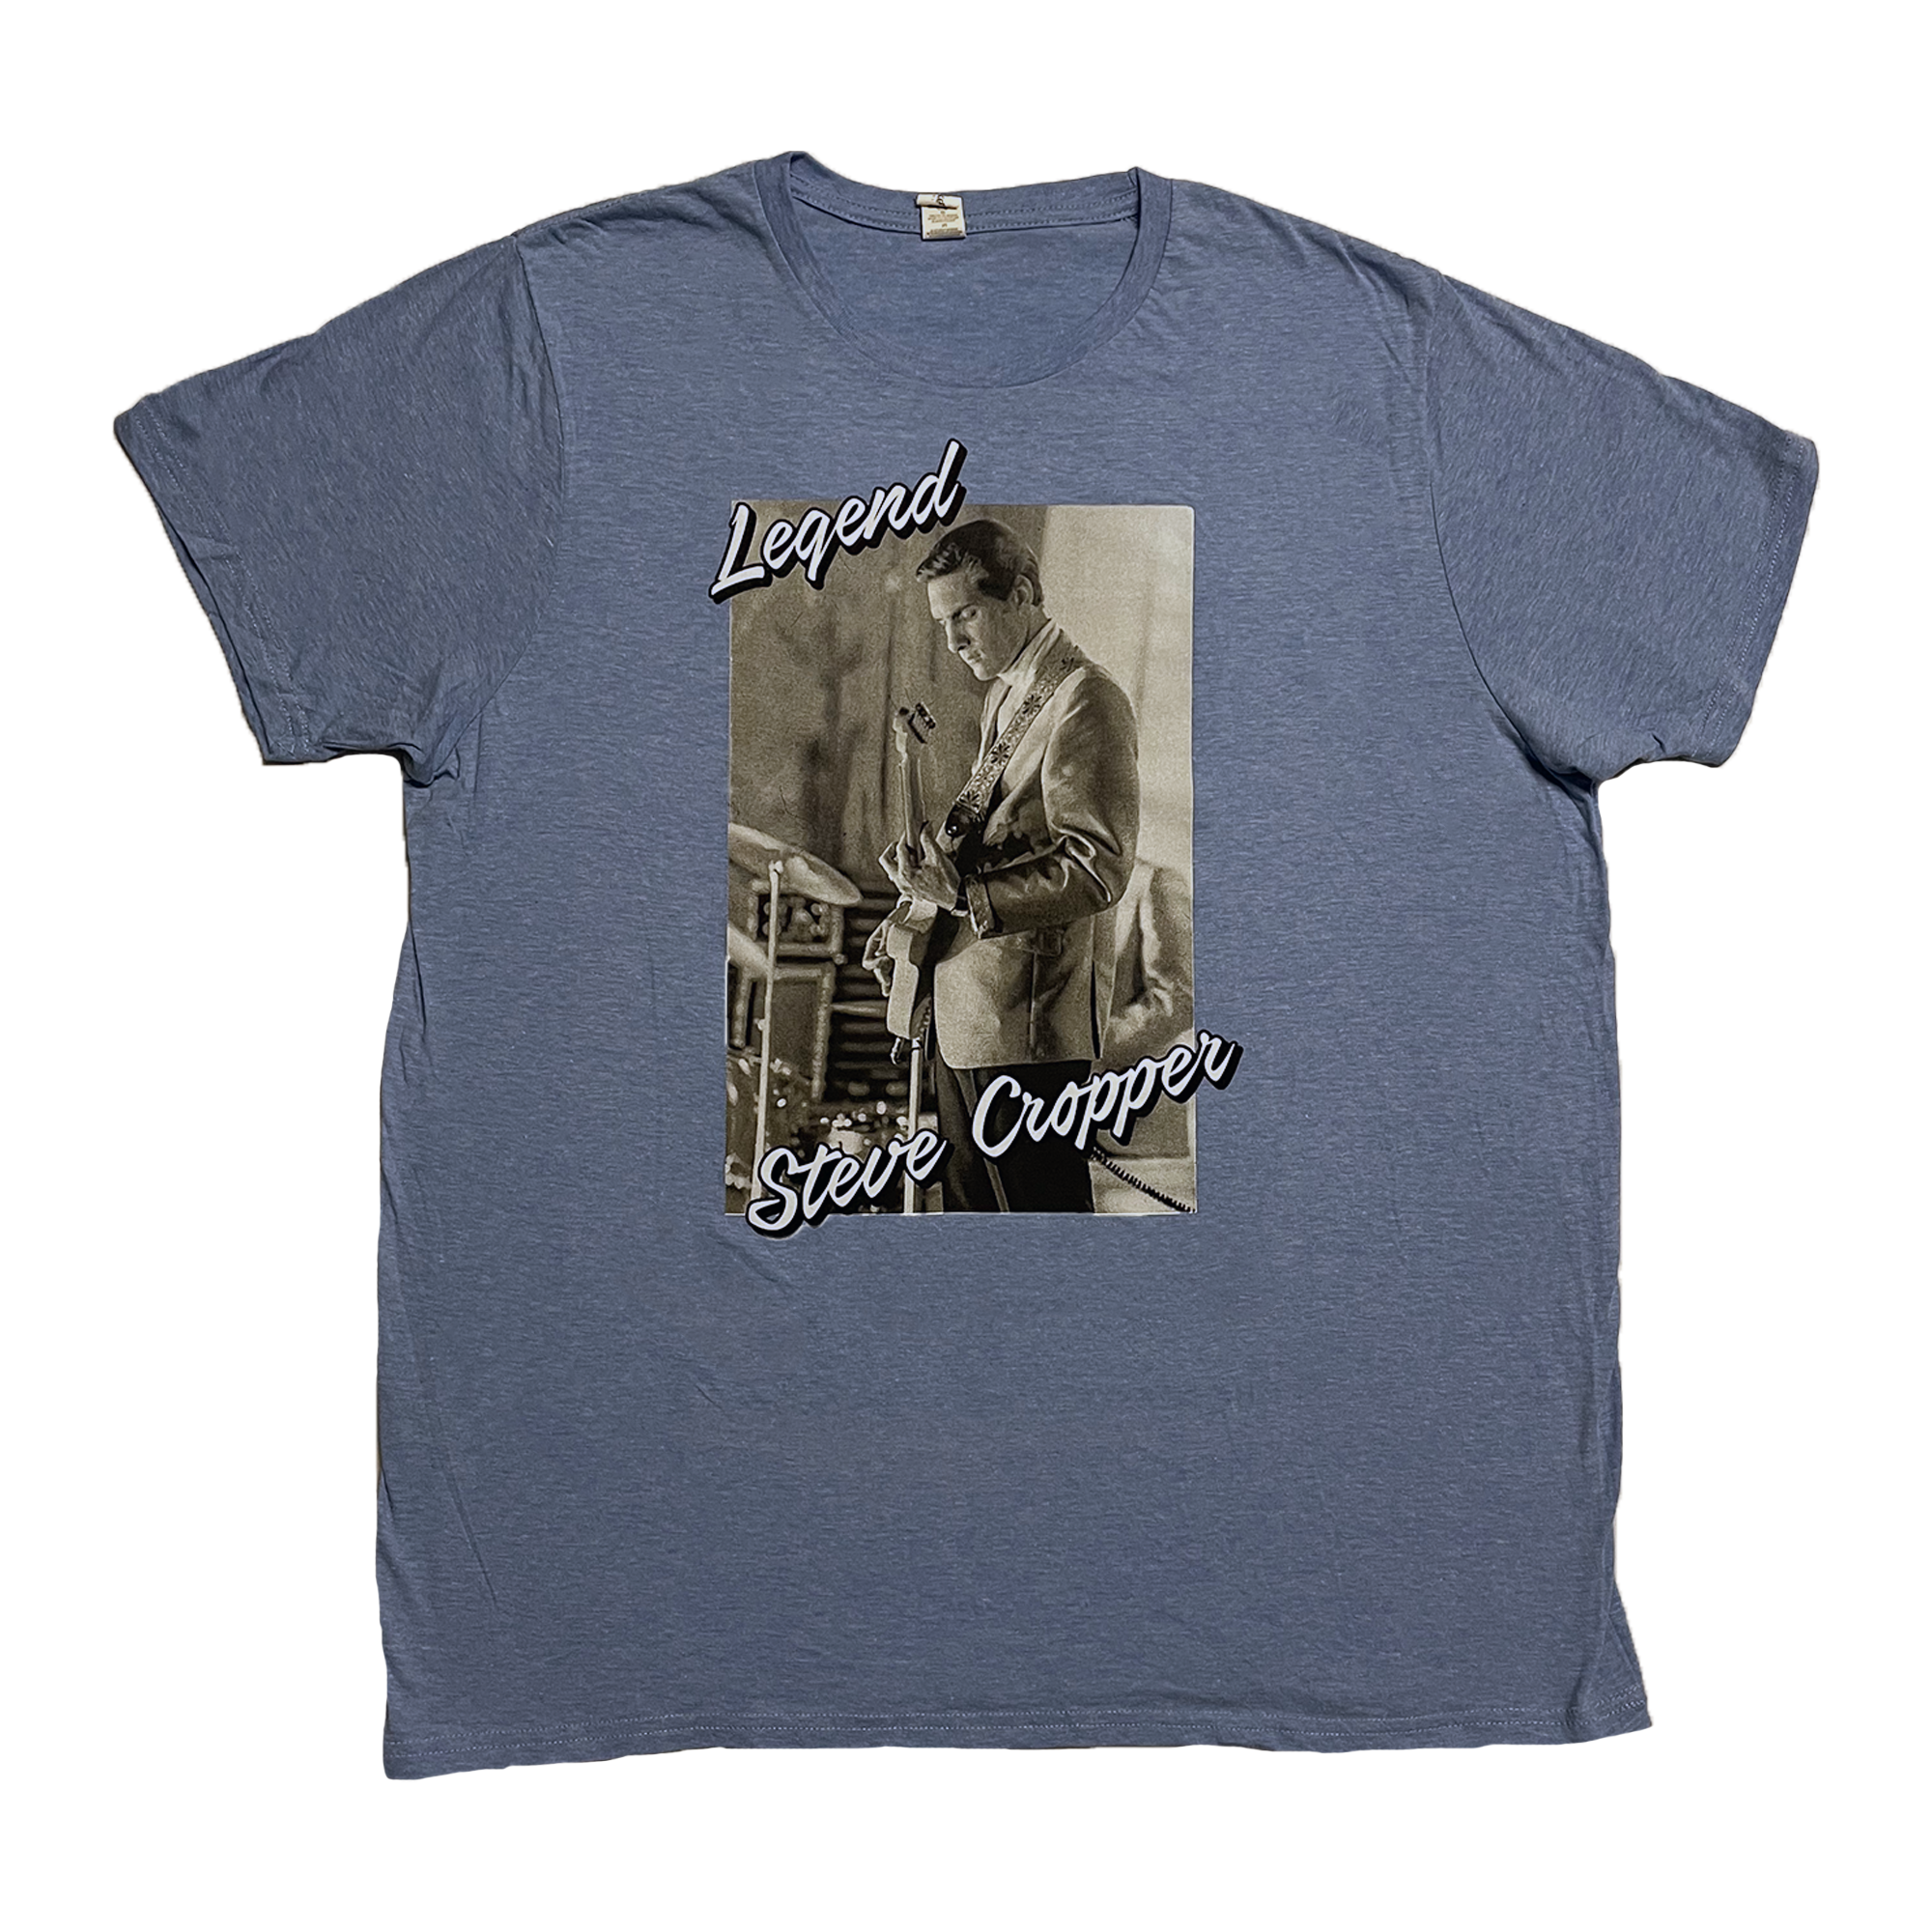 Steve Cropper - Legend Shirt